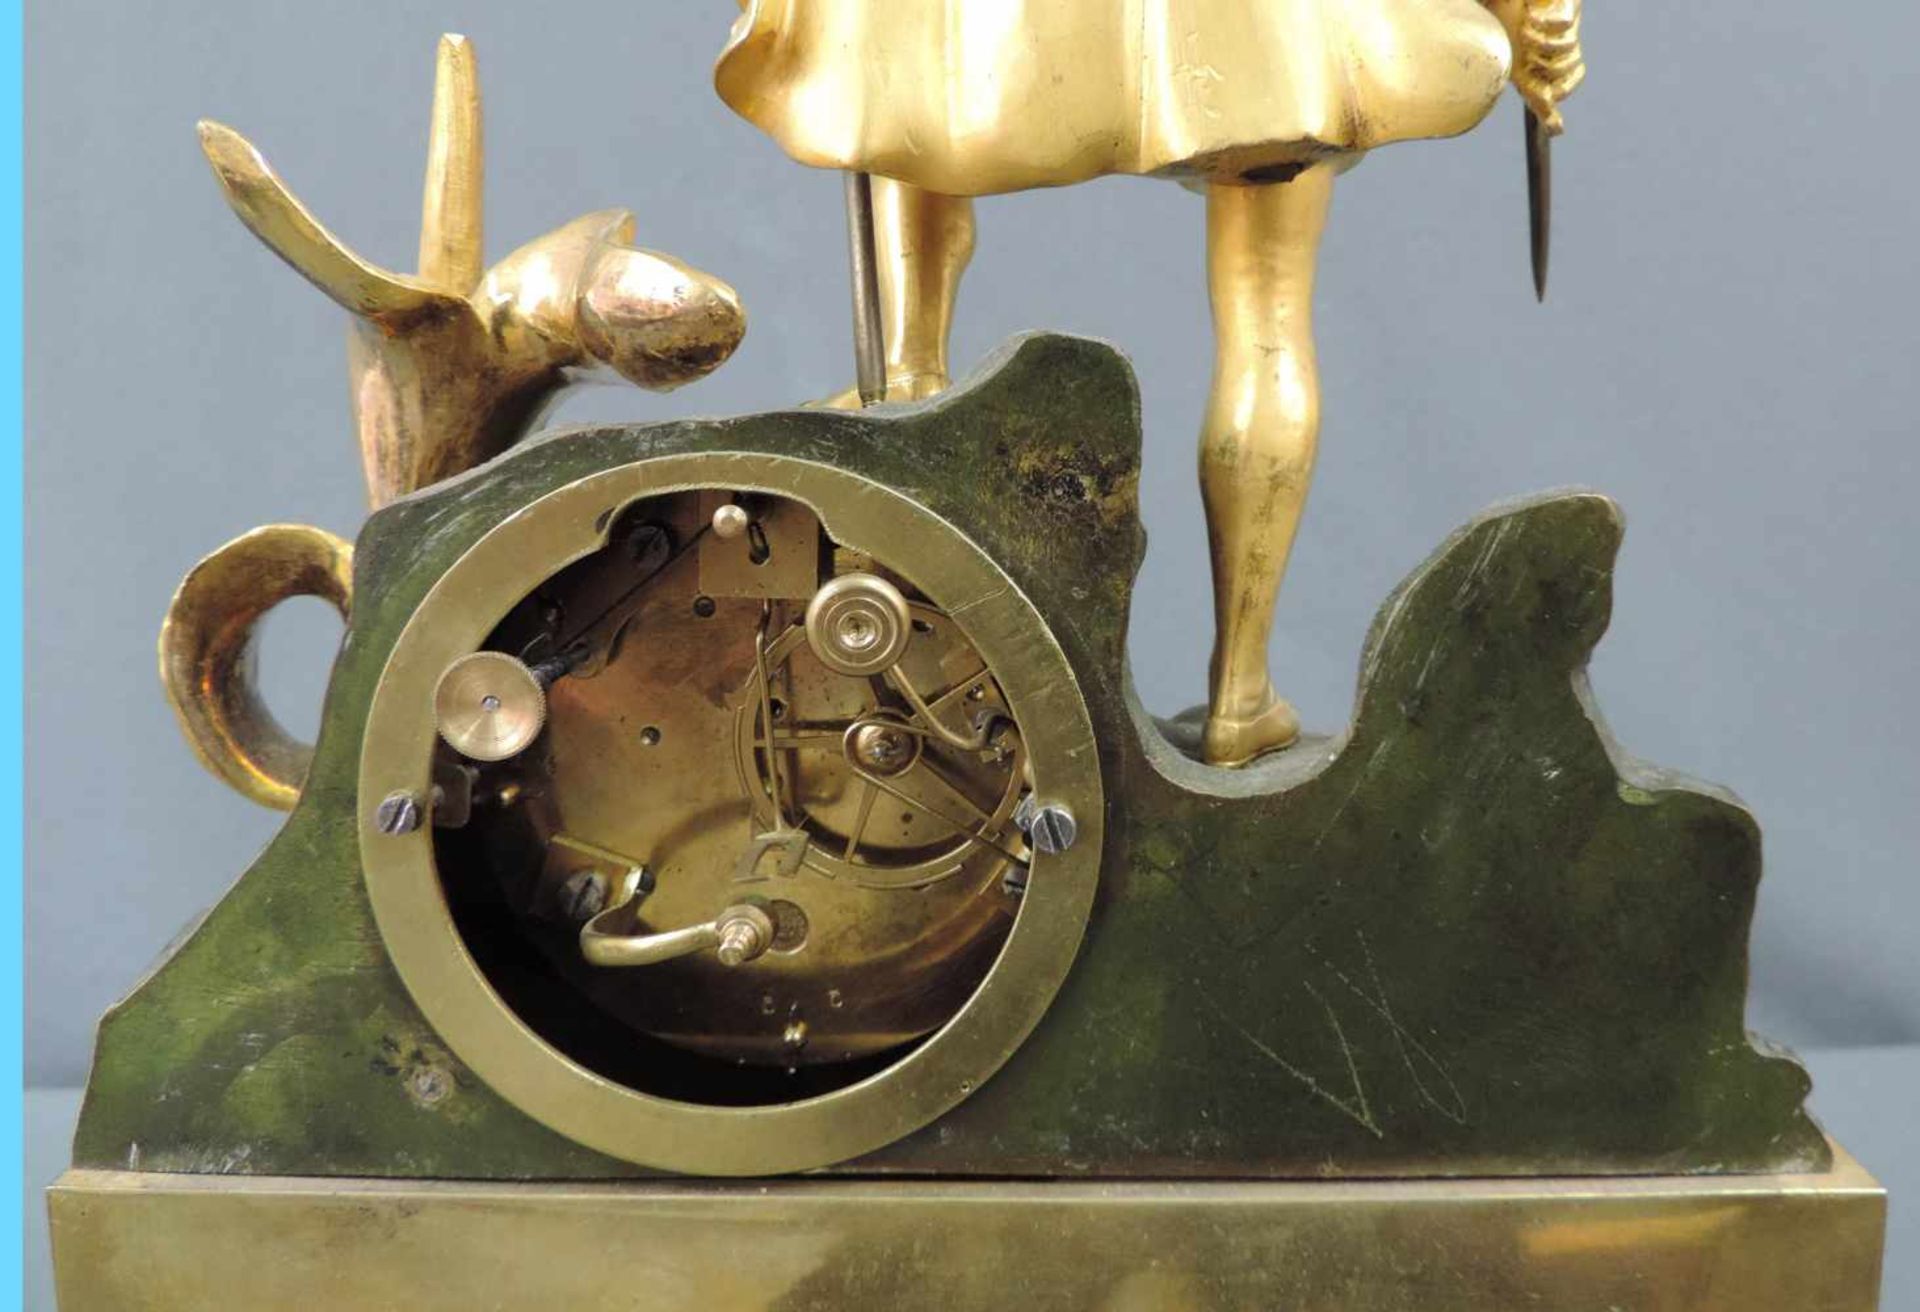 Prunkvolle Kaminuhr, 19. Jahrhundert 44 cm x 31 cm. Metallfigur mit integrierter Uhr zum aufziehen - Bild 6 aus 8